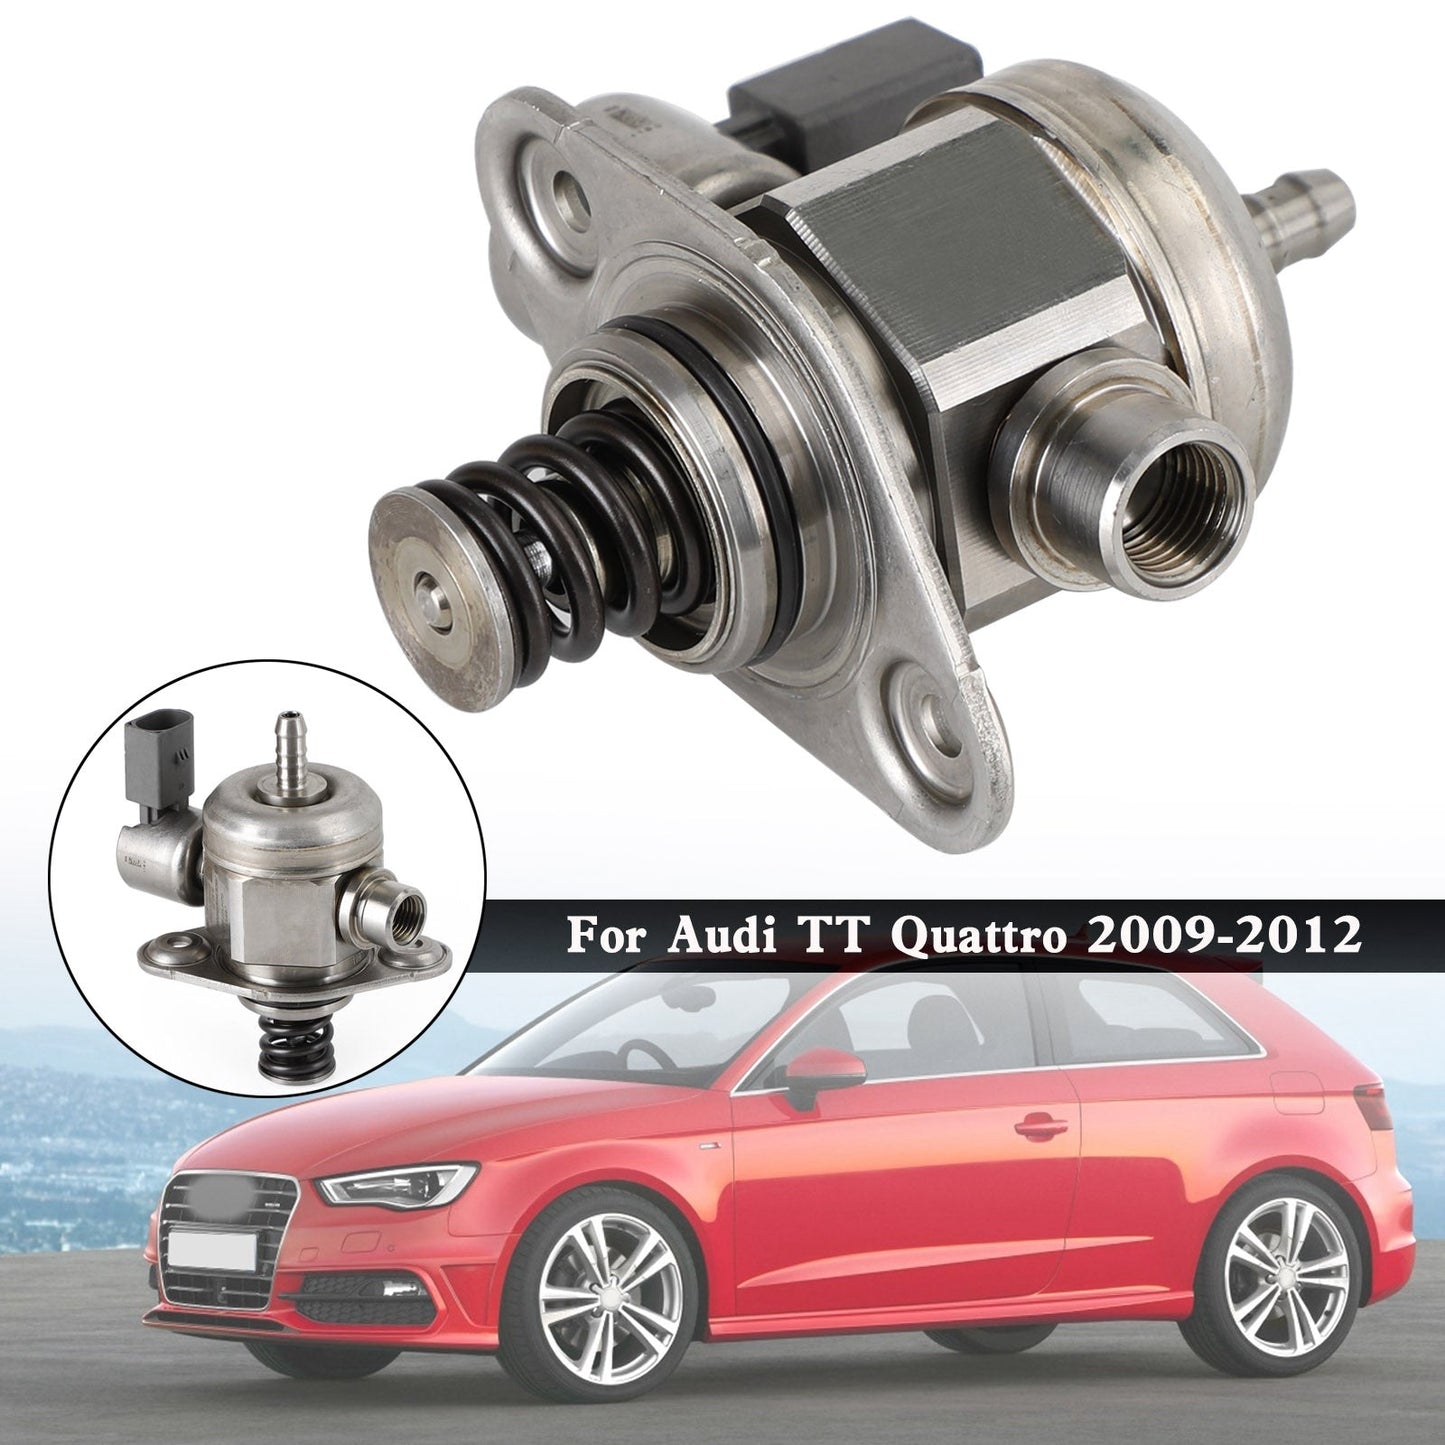 VW Beetle 2012-2013 / VW Eos 2009-2016 High Pressure Fuel Pump 06H127025N